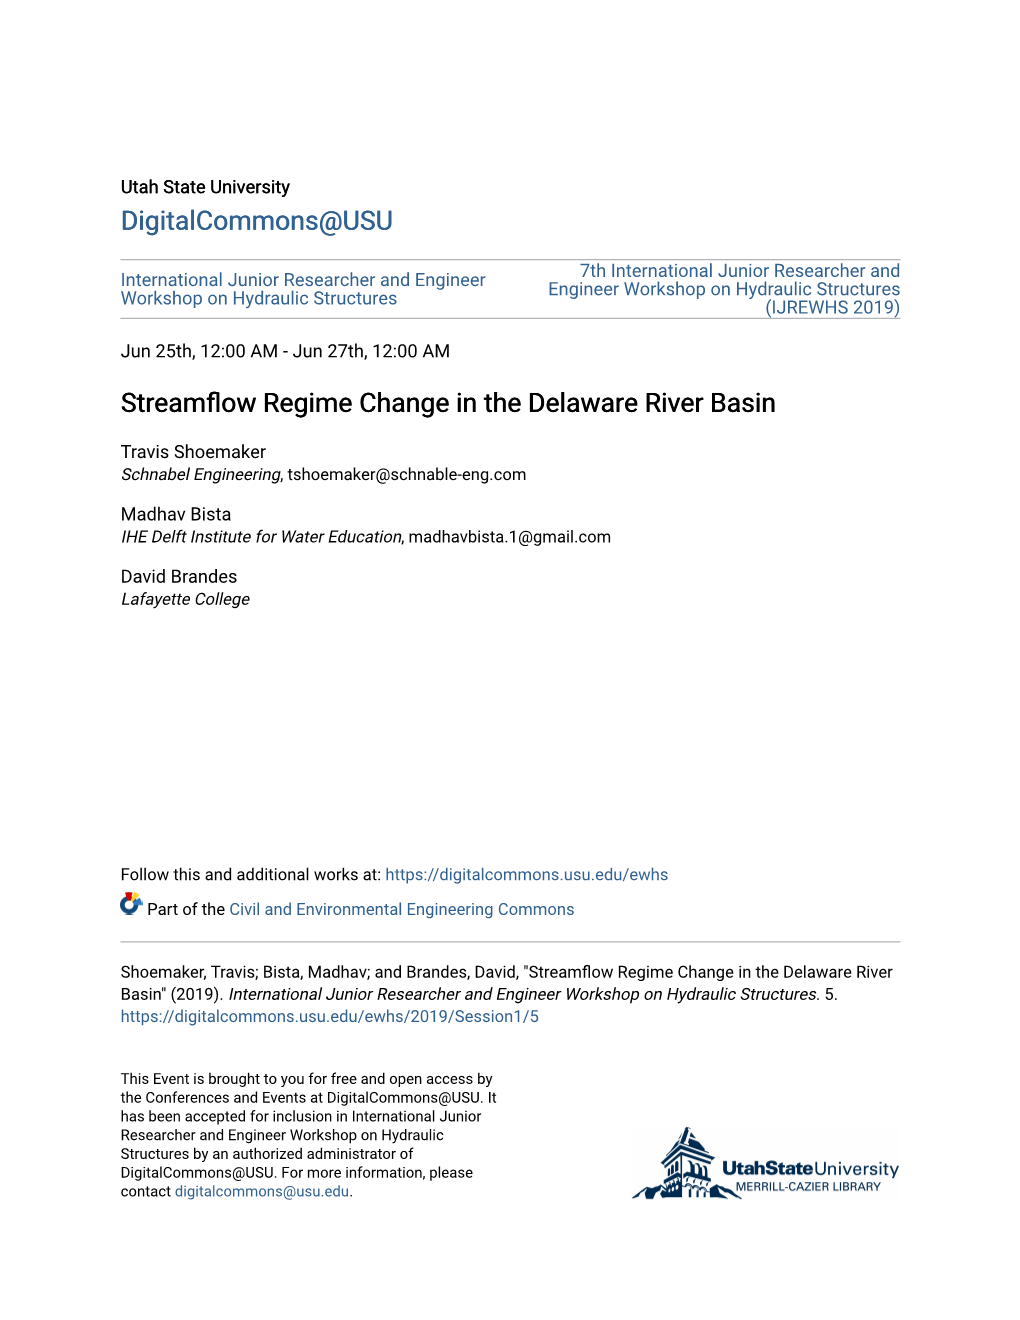 Streamflow Regime Change in the Delaware River Basin